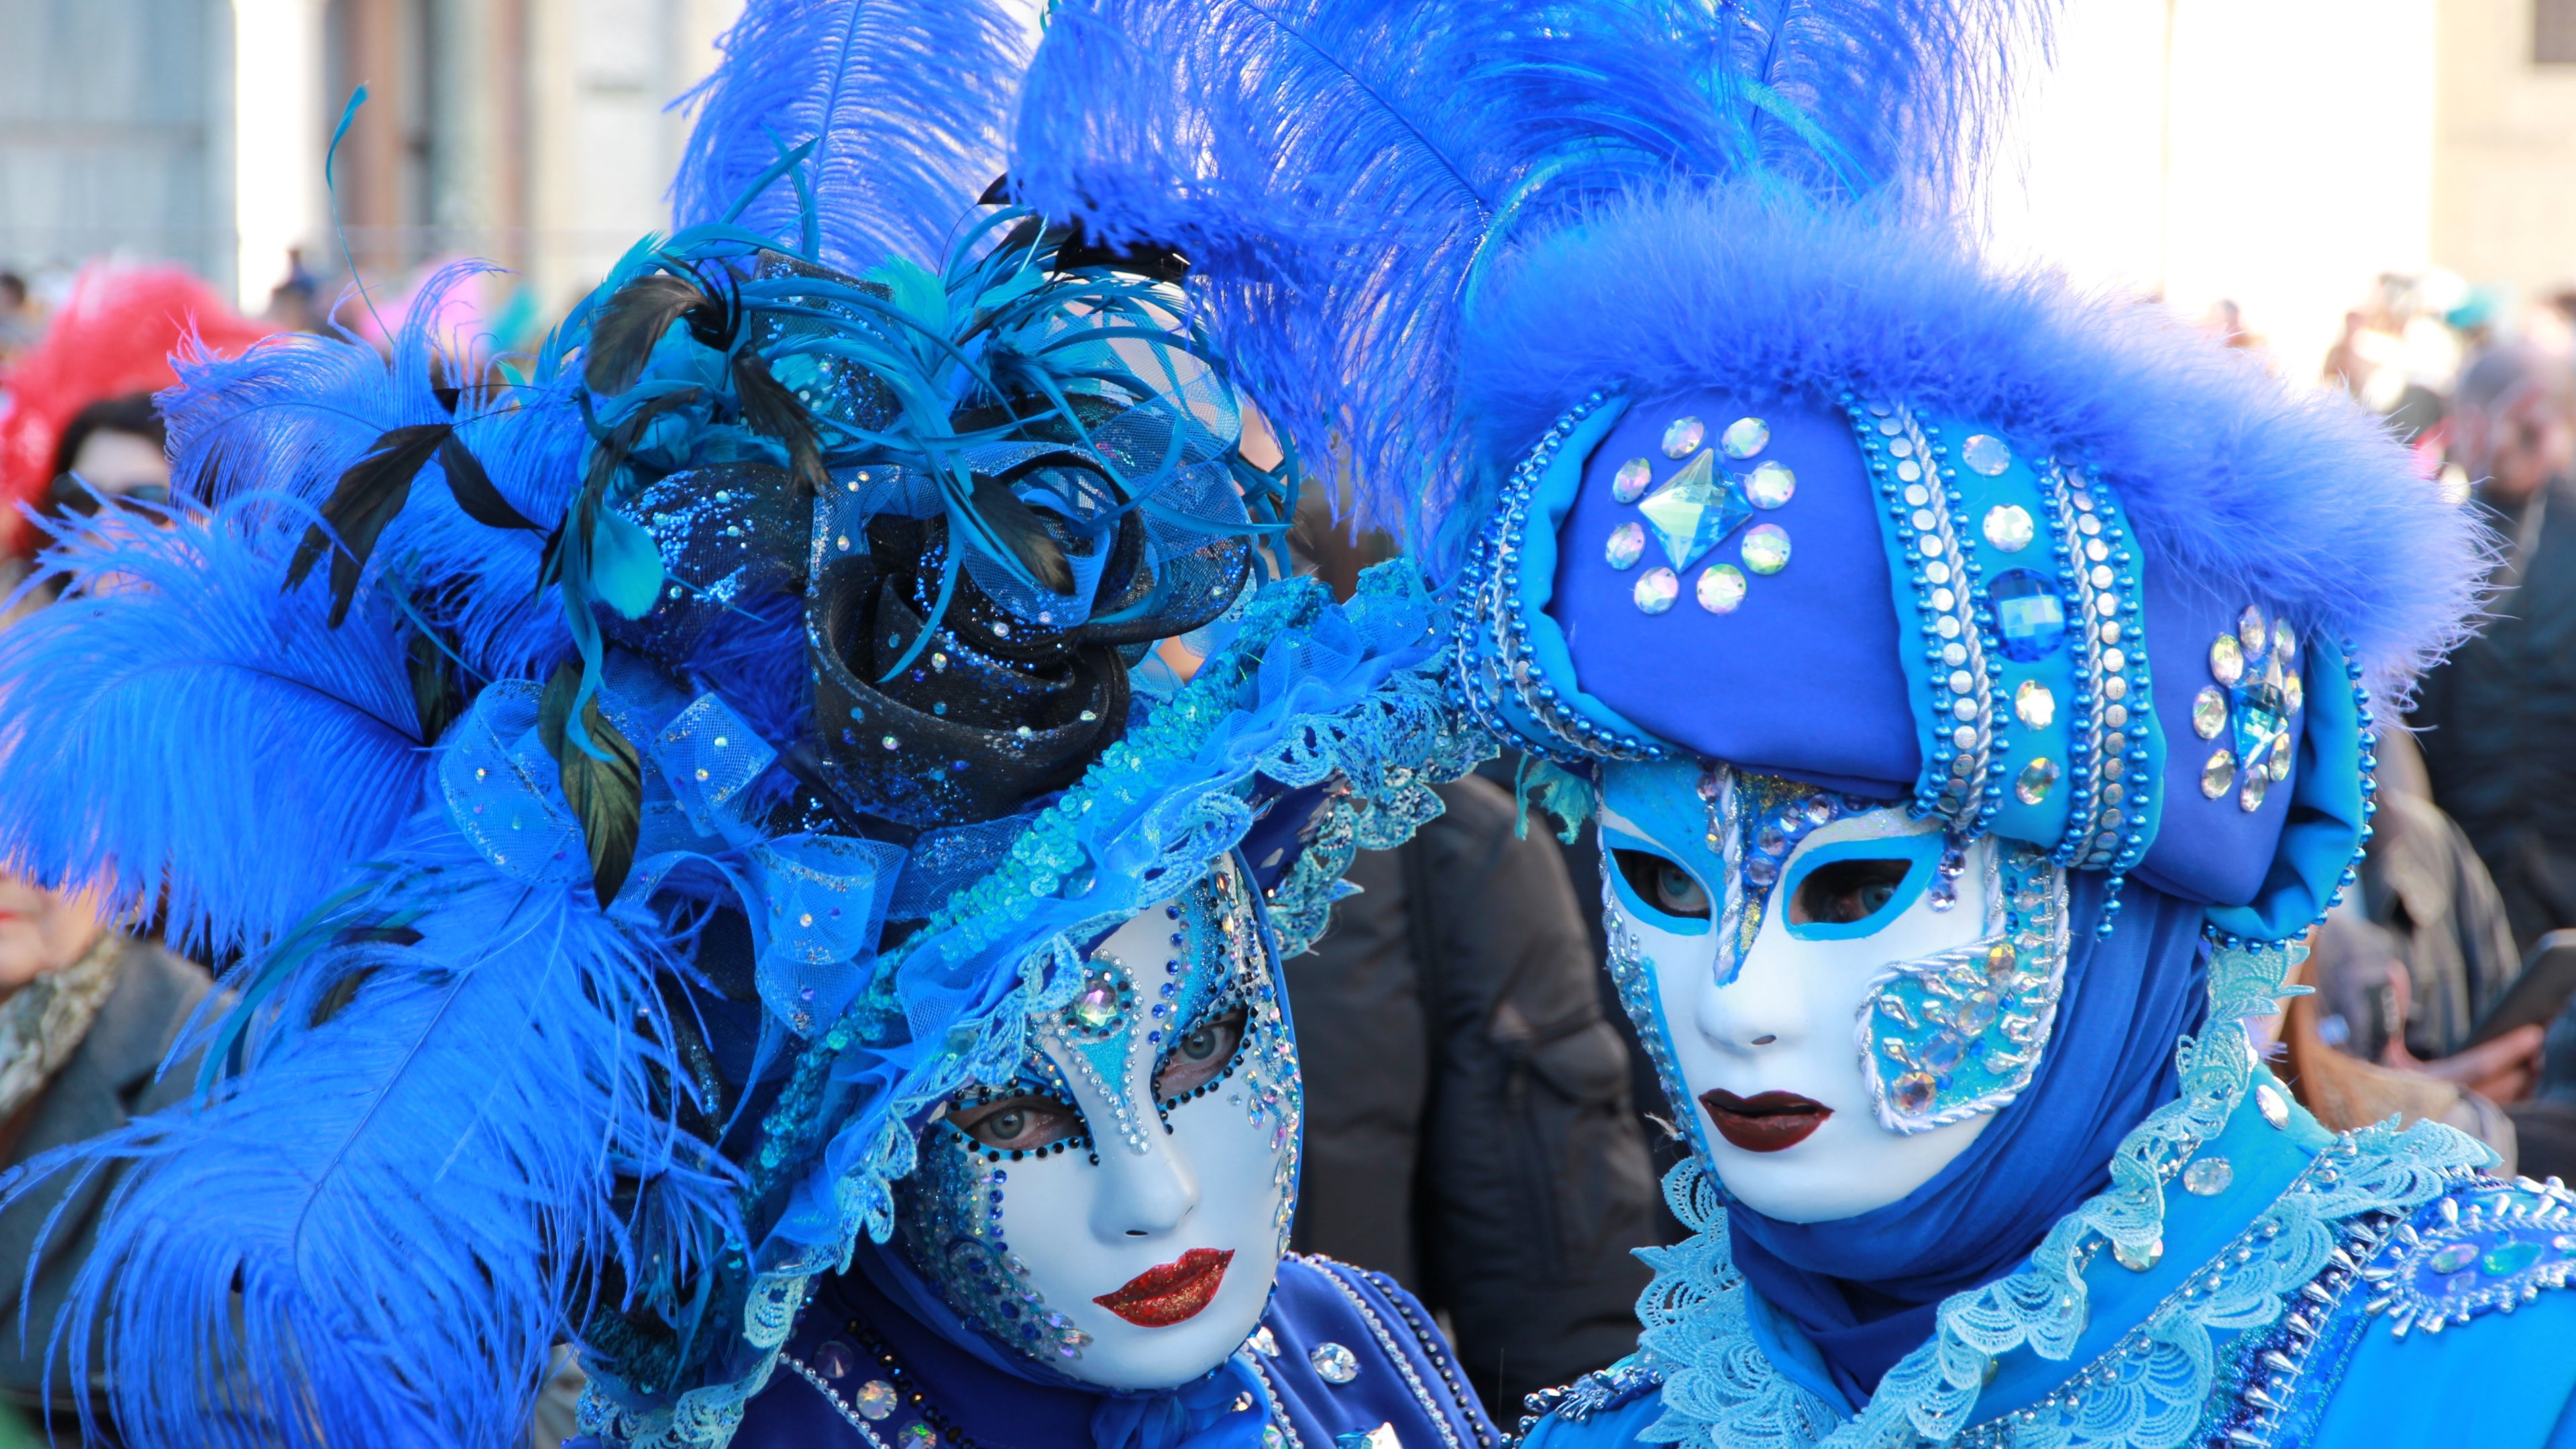 Скачать обои Венецианский Карнавал на телефон бесплатно